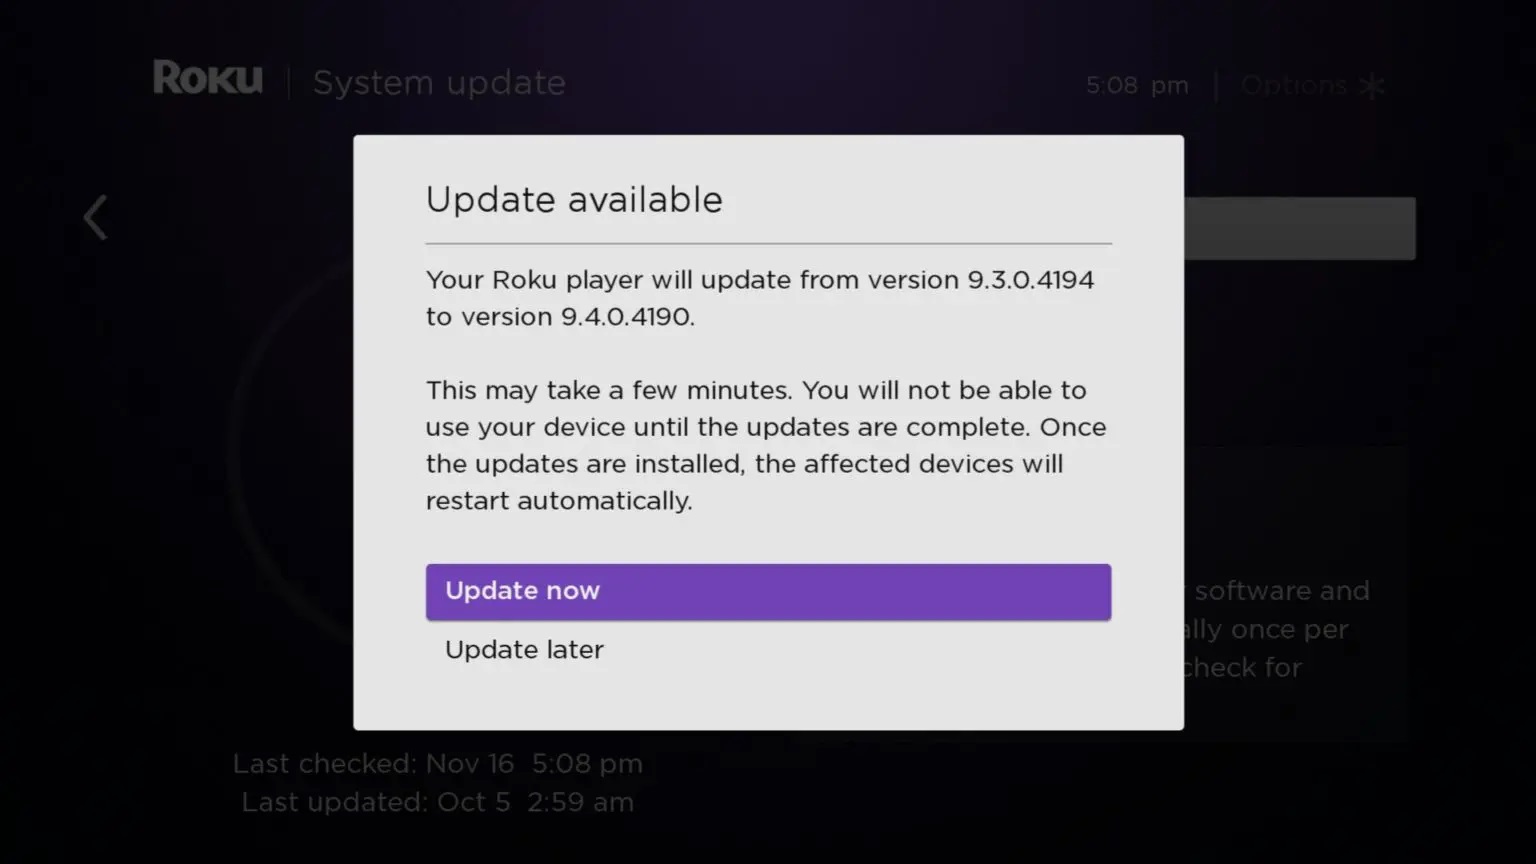 Updating software may help resolve Error 014.50 in Roku